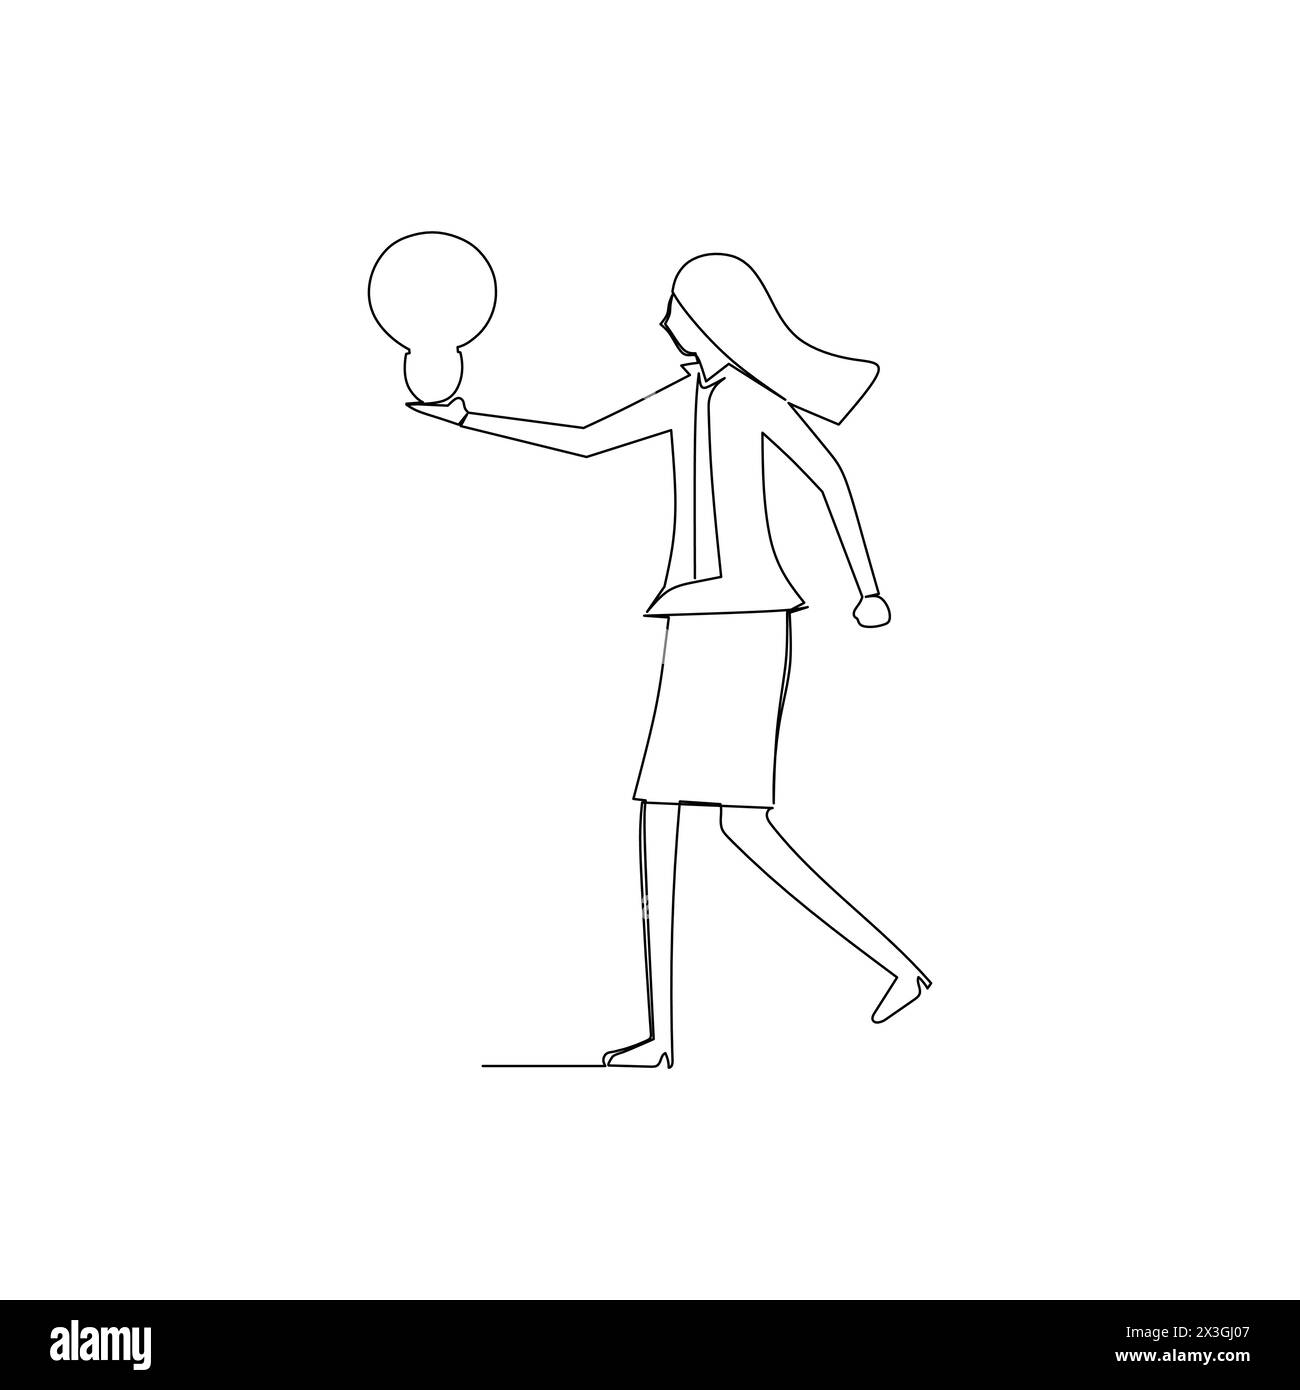 Geschäftsfrau, die eine Glühbirne hält. Einfache, von Hand gezeichnete, durchgehende Linienzeichnung für geschäftliche Illustration und Konzeptdesign Stock Vektor